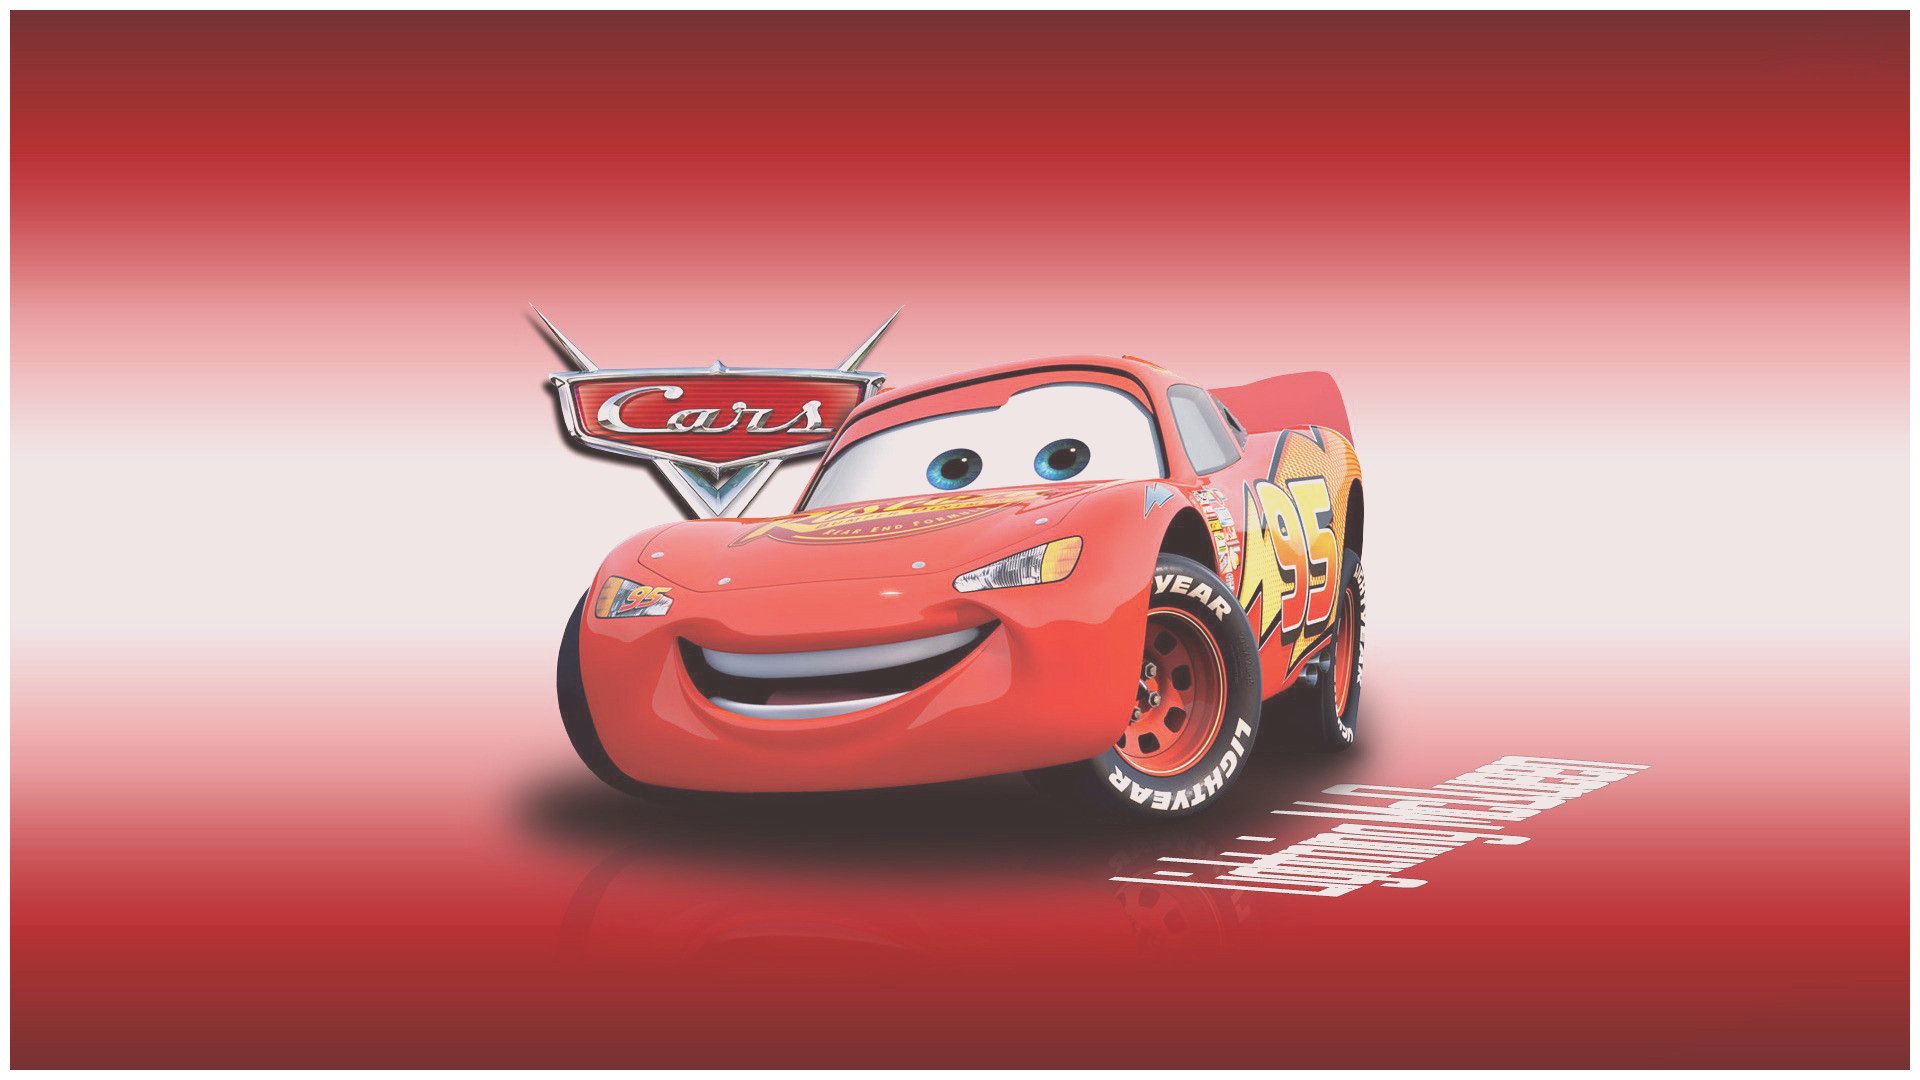 Disney Cars Wallpaper Border - Cars Wallpaper Hd Pixar , HD Wallpaper & Backgrounds